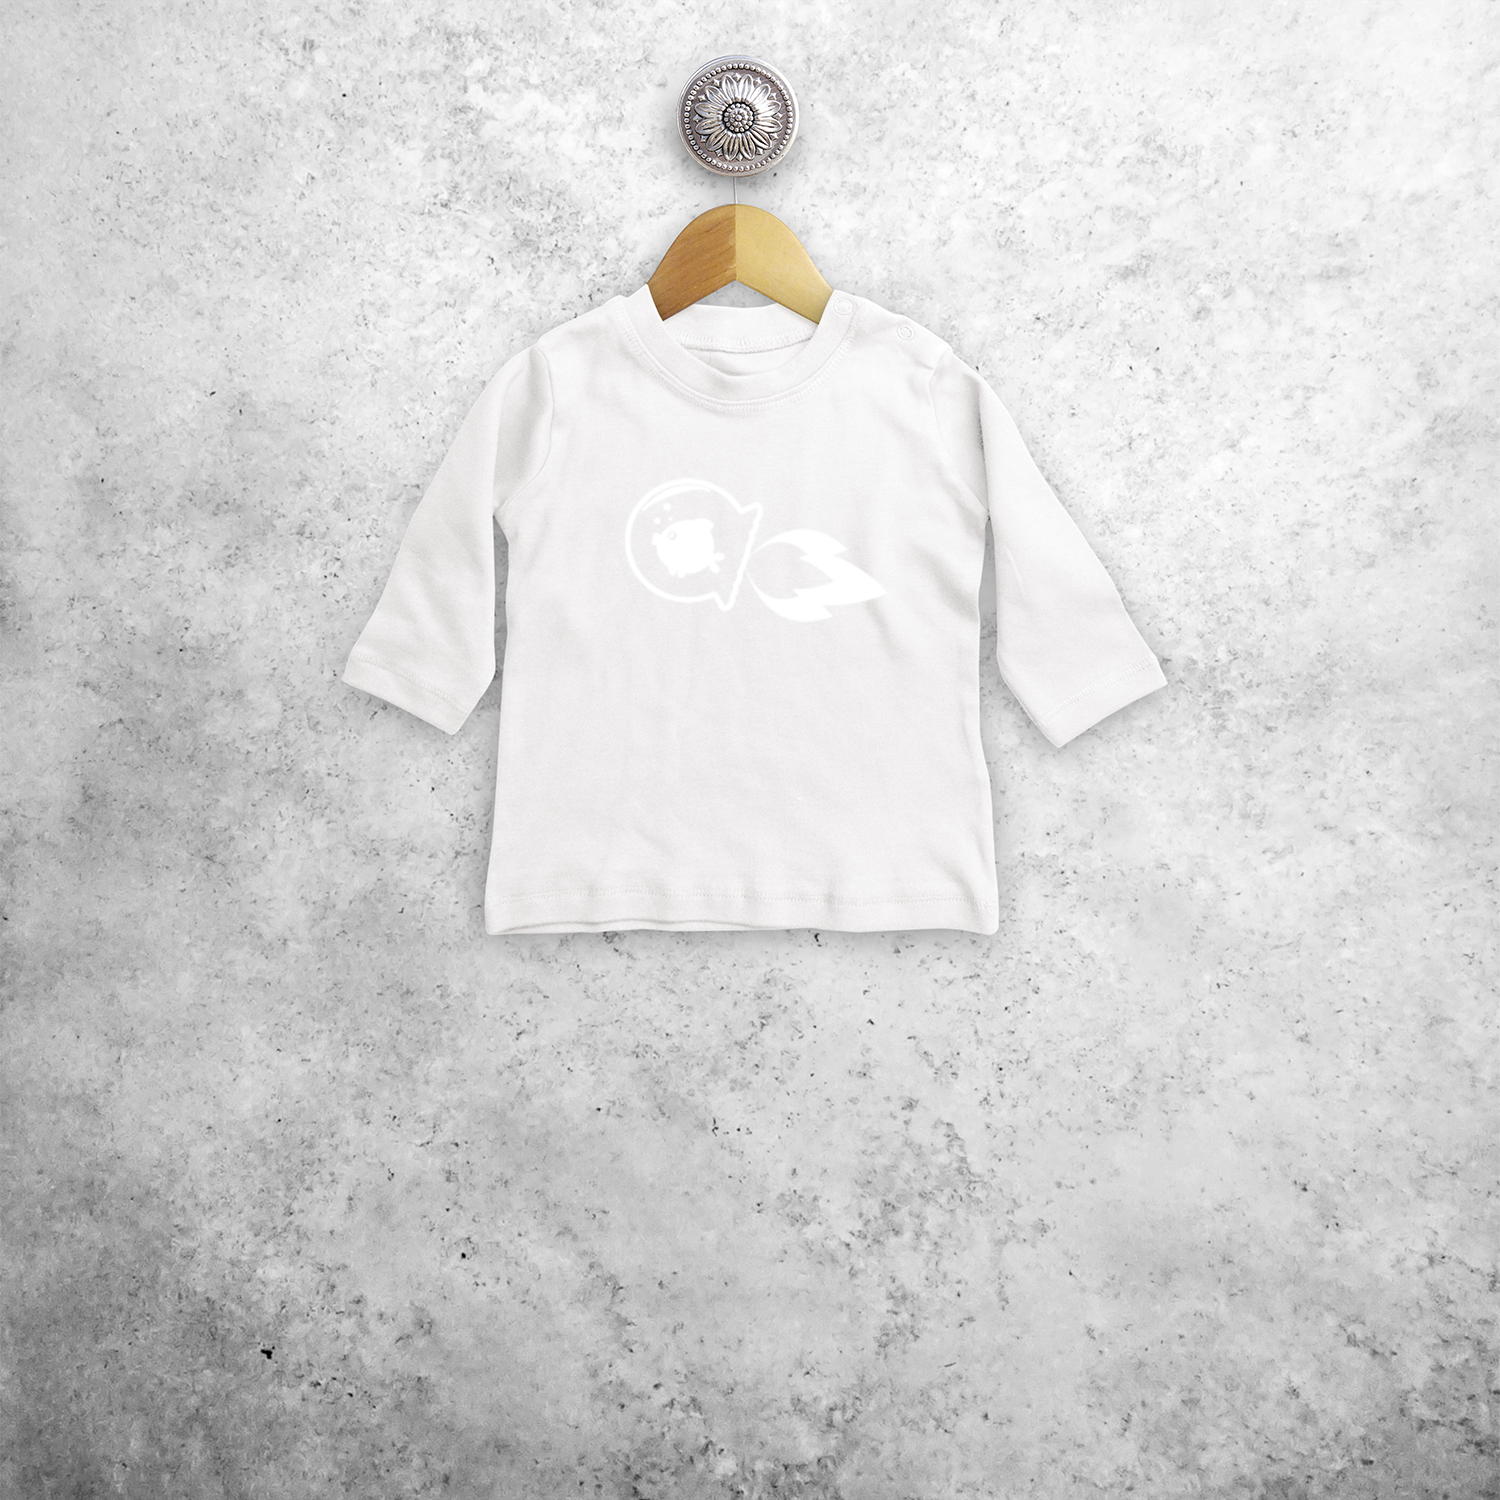 Vis en visbokaal magisch baby shirt met lange mouwen